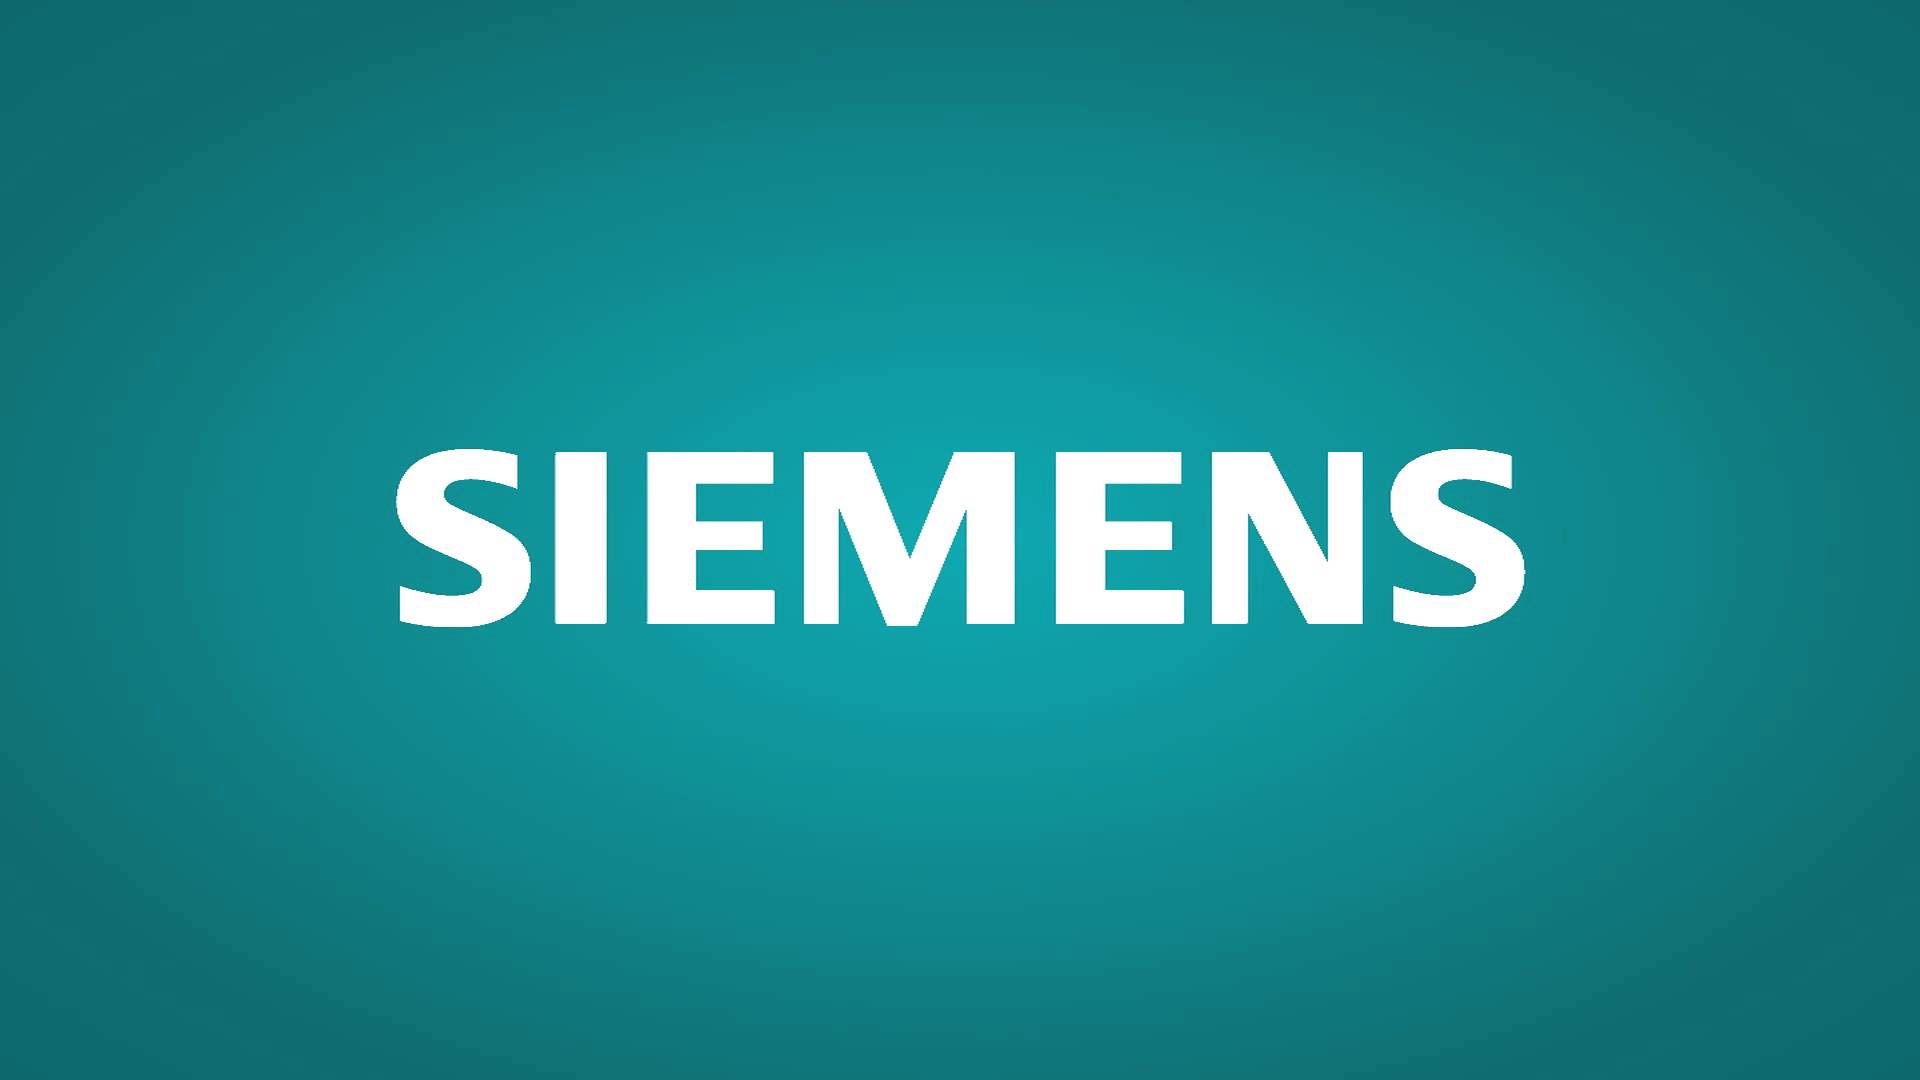 Siemens Wallpaper Free Siemens Background